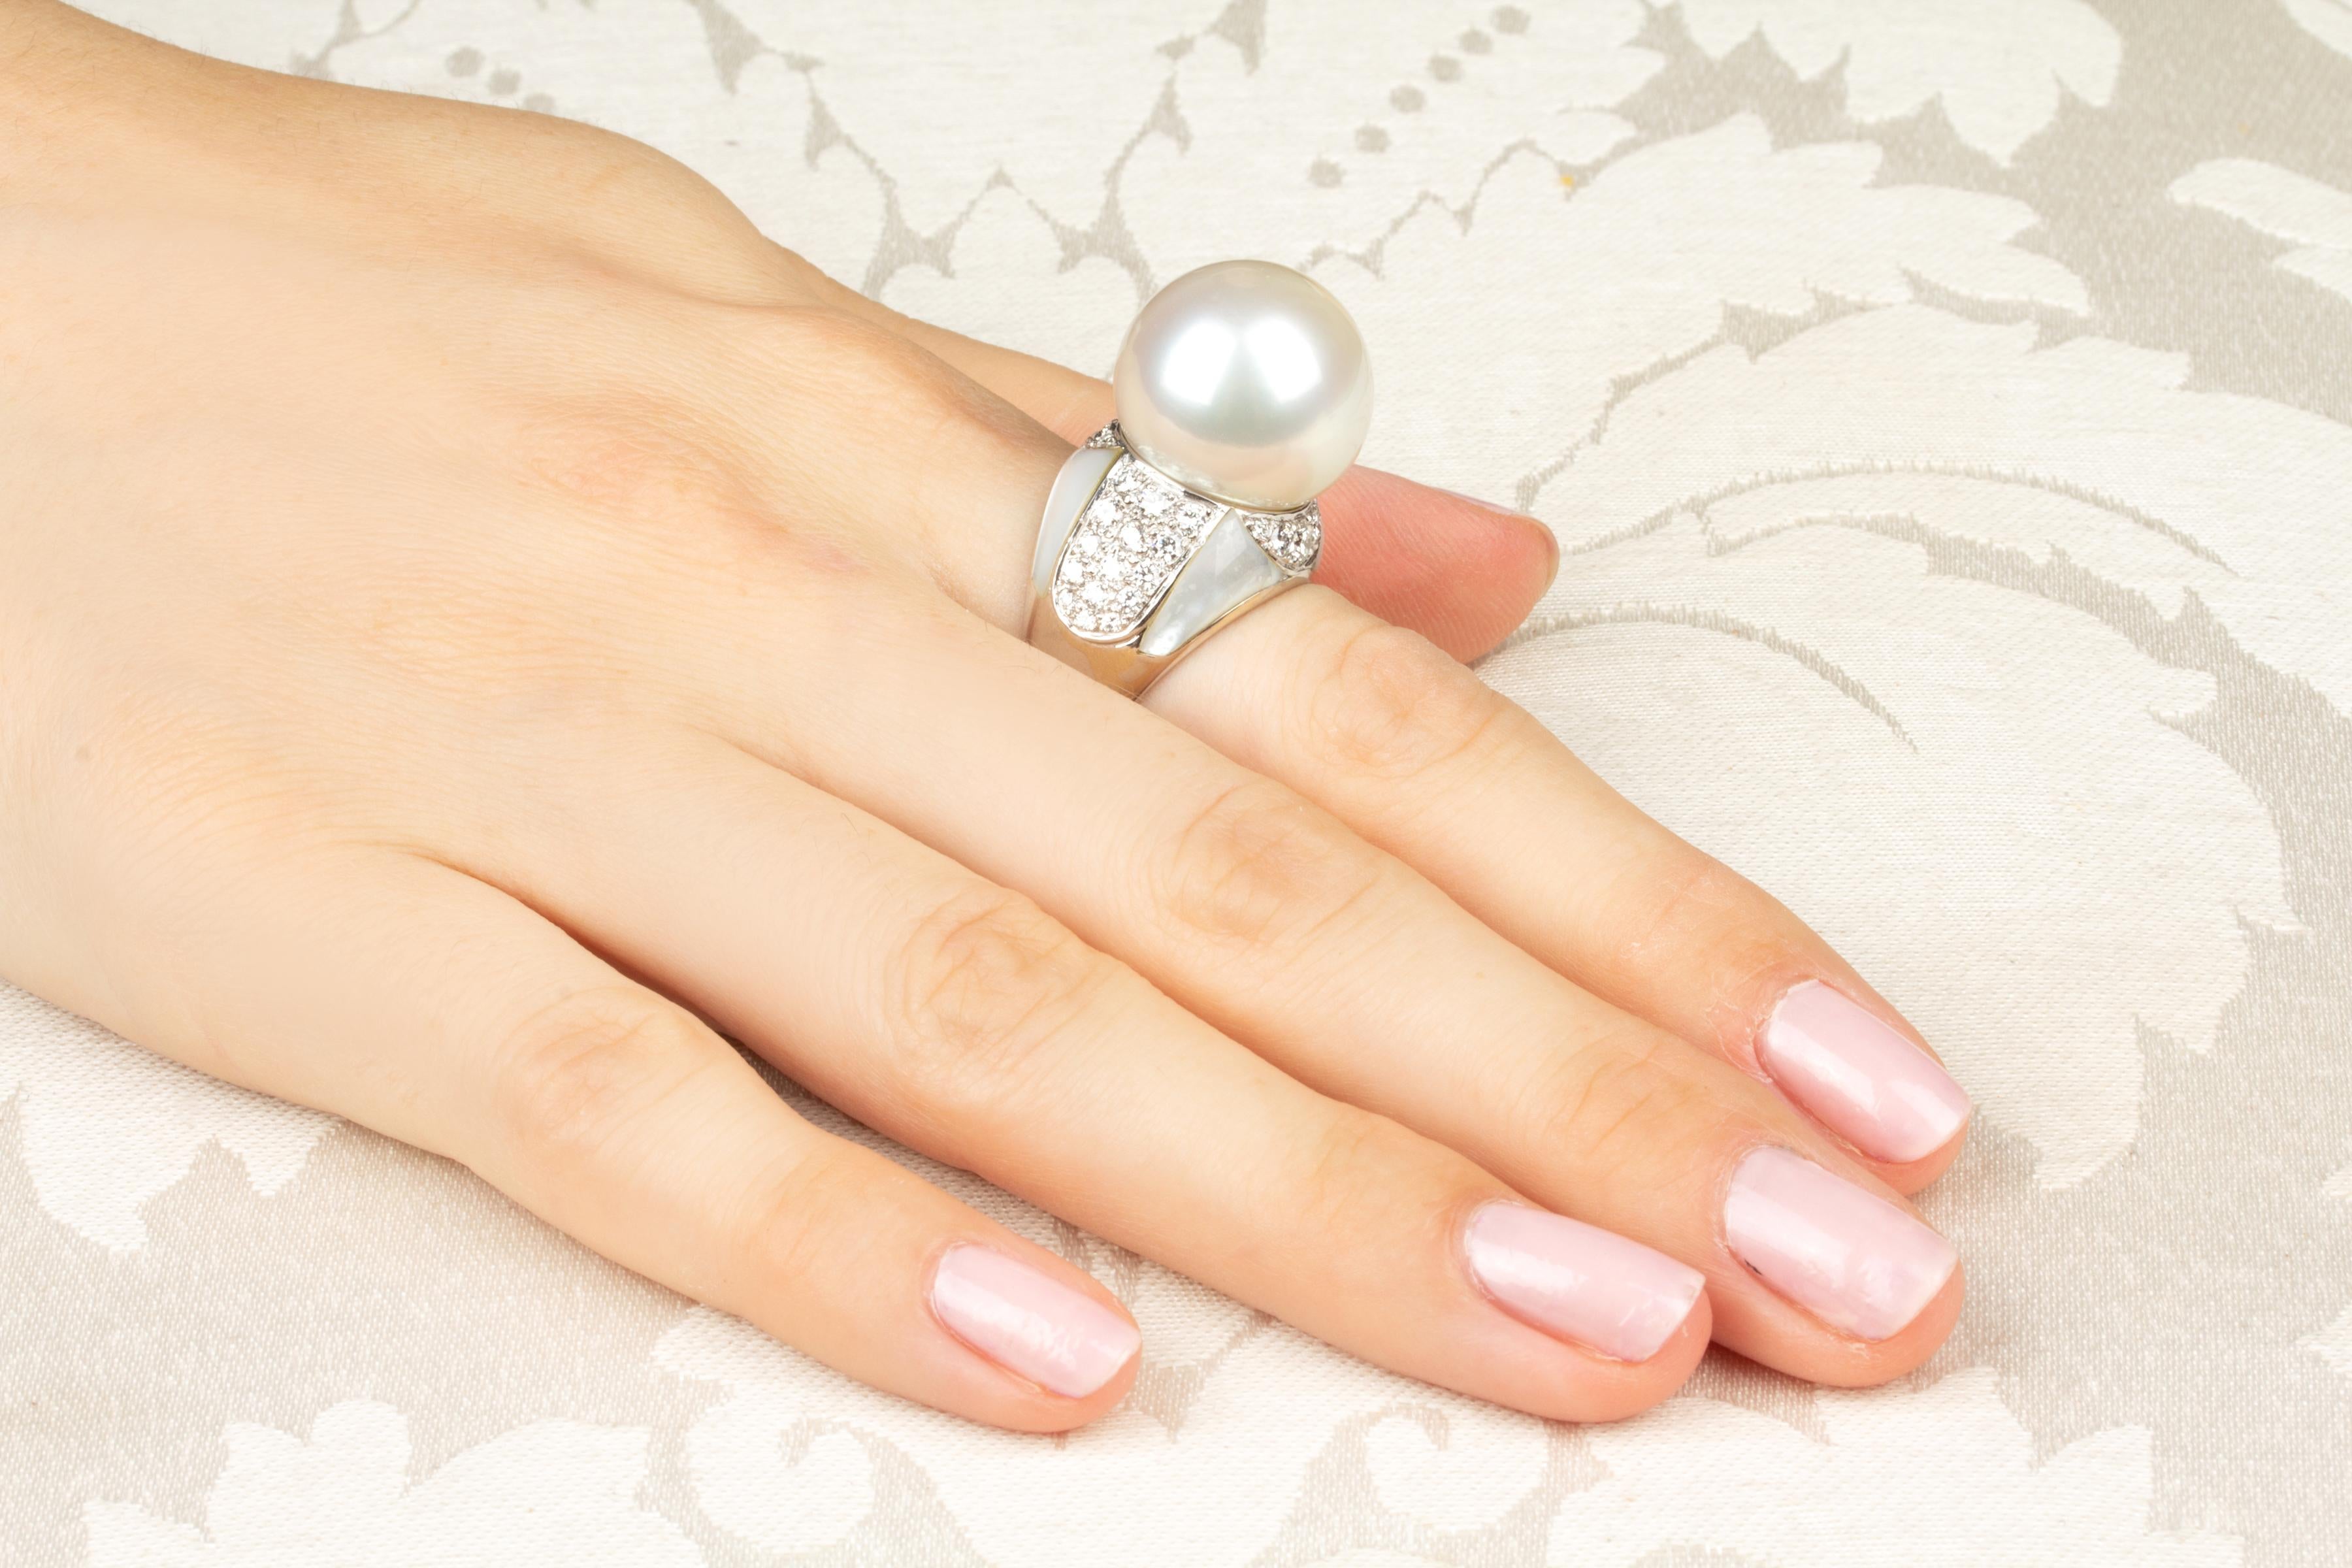 Dieser Ring aus Südseeperlen und Diamanten enthält eine Südseeperle mit einem Durchmesser von 17 mm. Die Perle ist naturbelassen. Sie weist ein prächtiges Perlmutt auf und ihre natürliche Farbe und ihr Glanz wurden in keiner Weise verbessert. Die